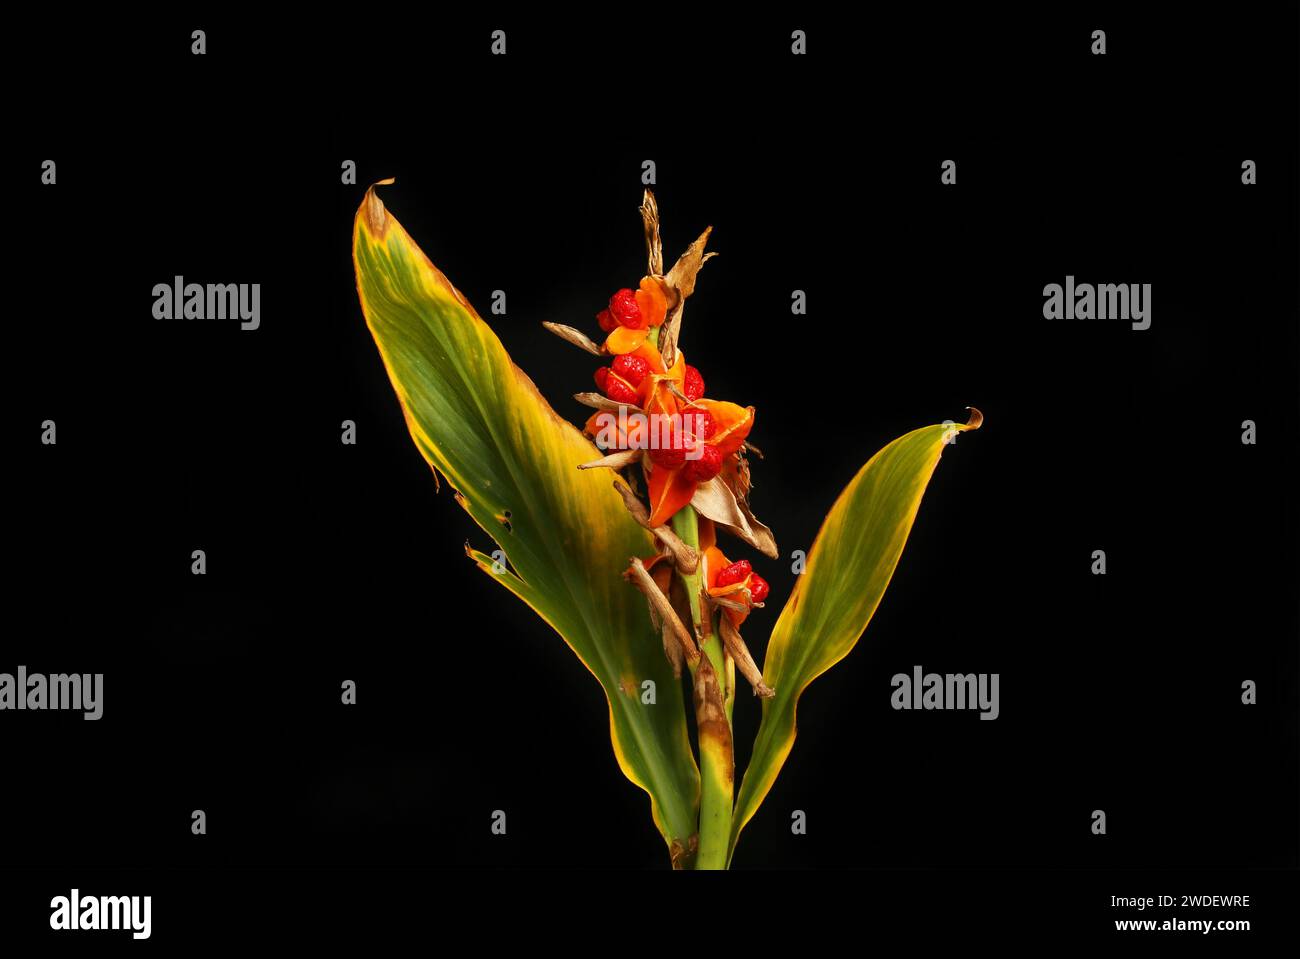 Lys de gingembre, Hedychium coronarium, graines mûrissantes et feuilles mourantes isolées contre le noir Banque D'Images